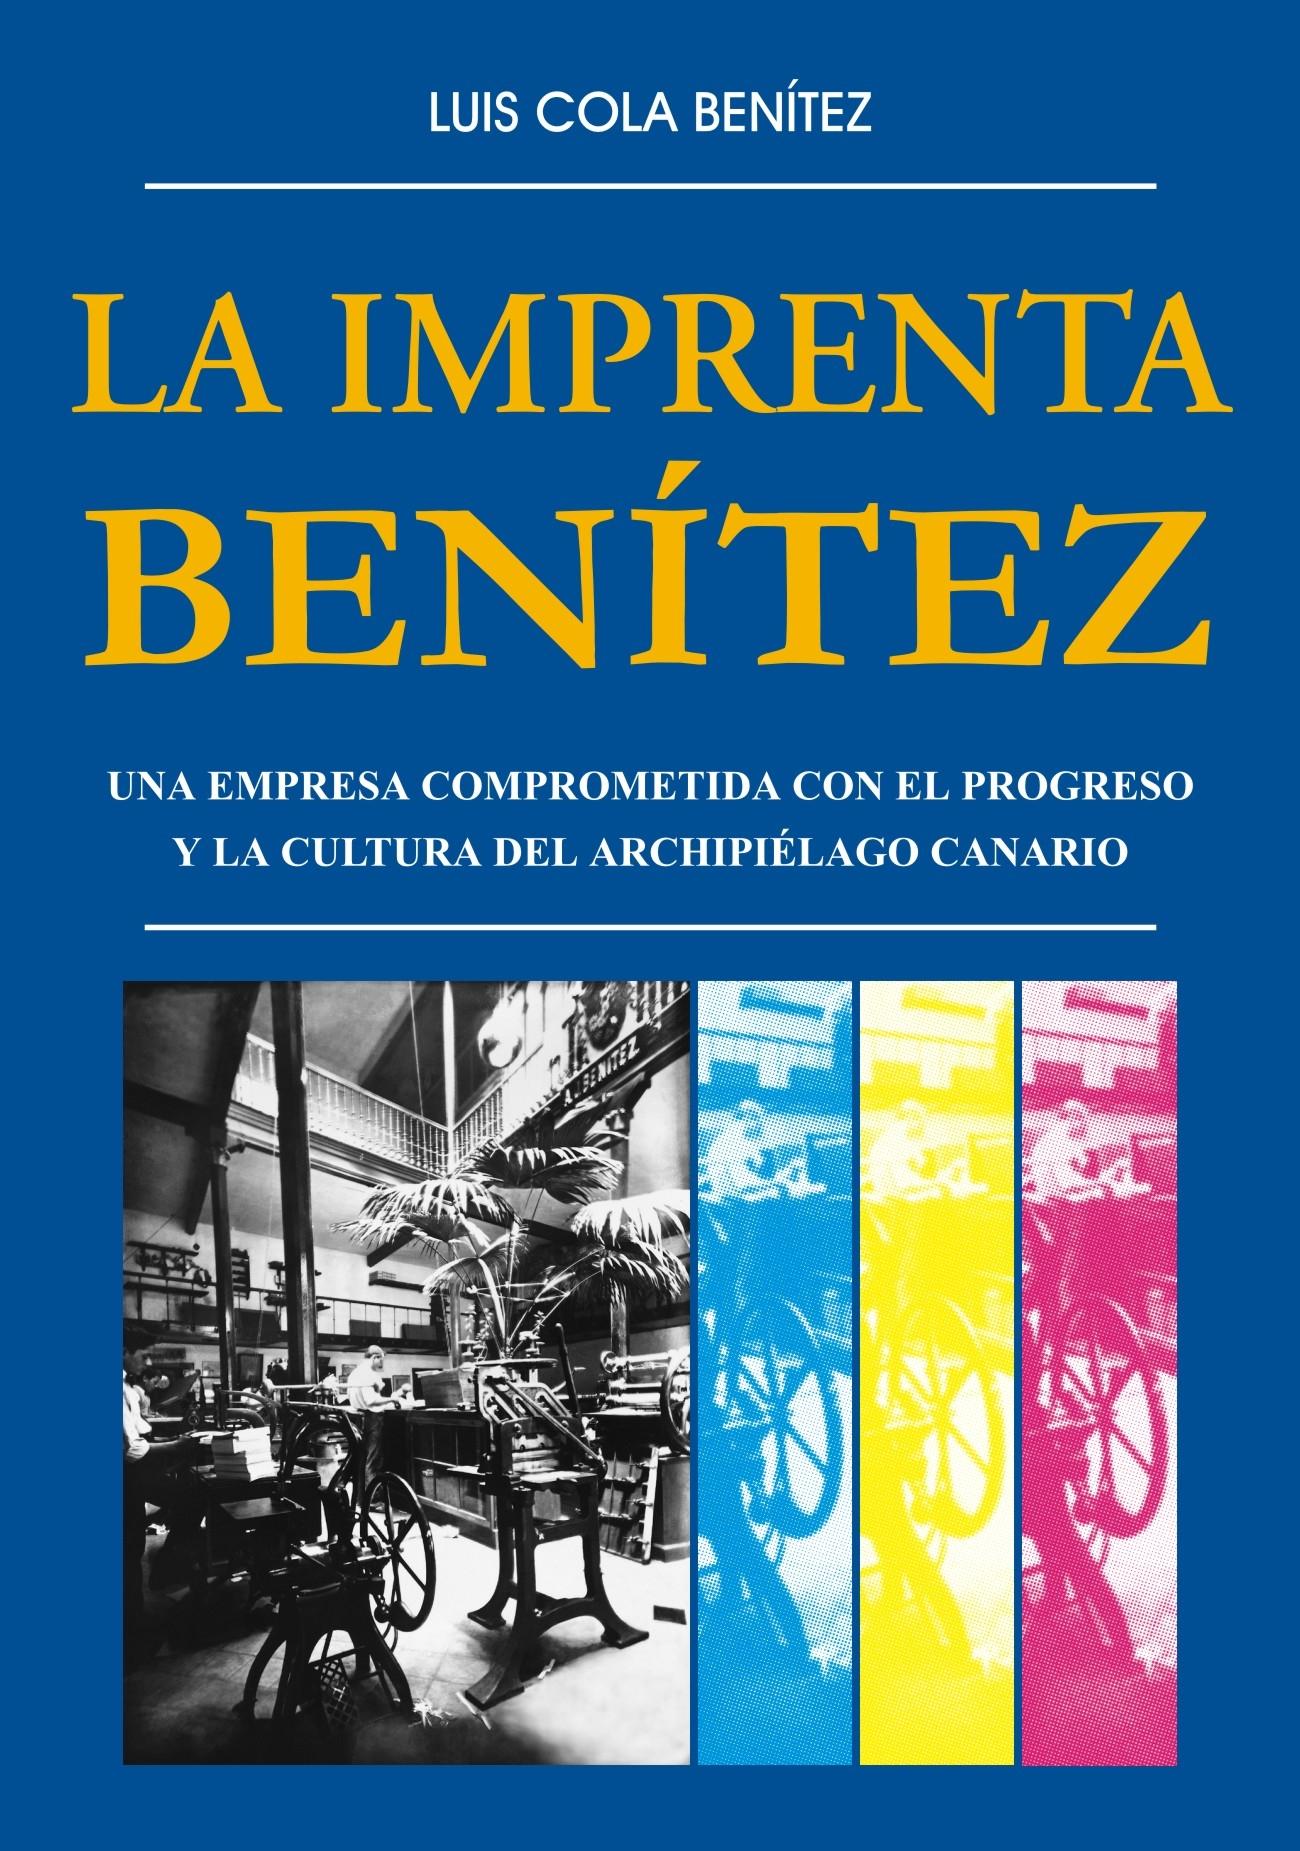 La imprenta Benítez "Una empresa comprometida con el progreso y la cultura del archipiélago canario"